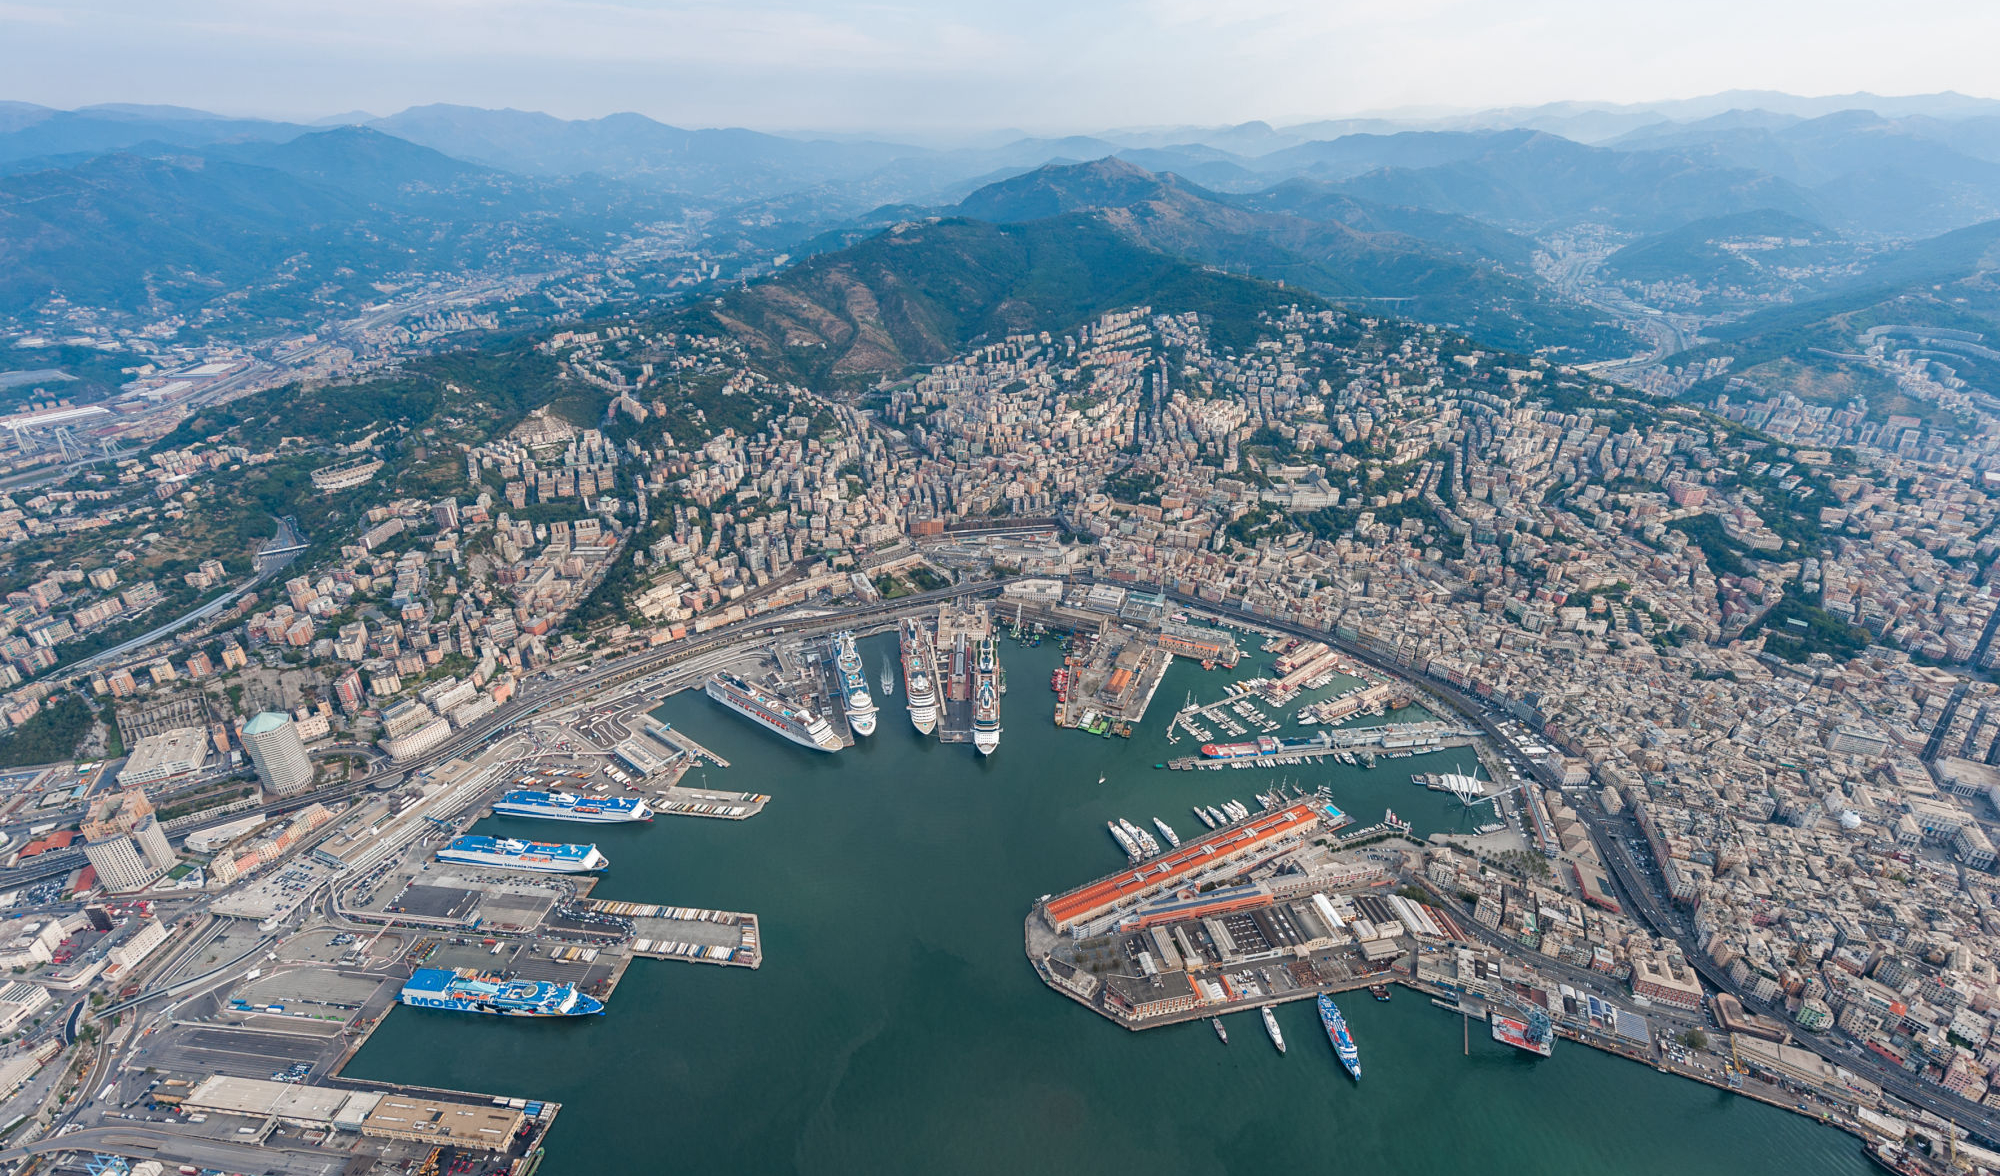 Porti di Genova e Savona hub per Ferrero e Lavazza